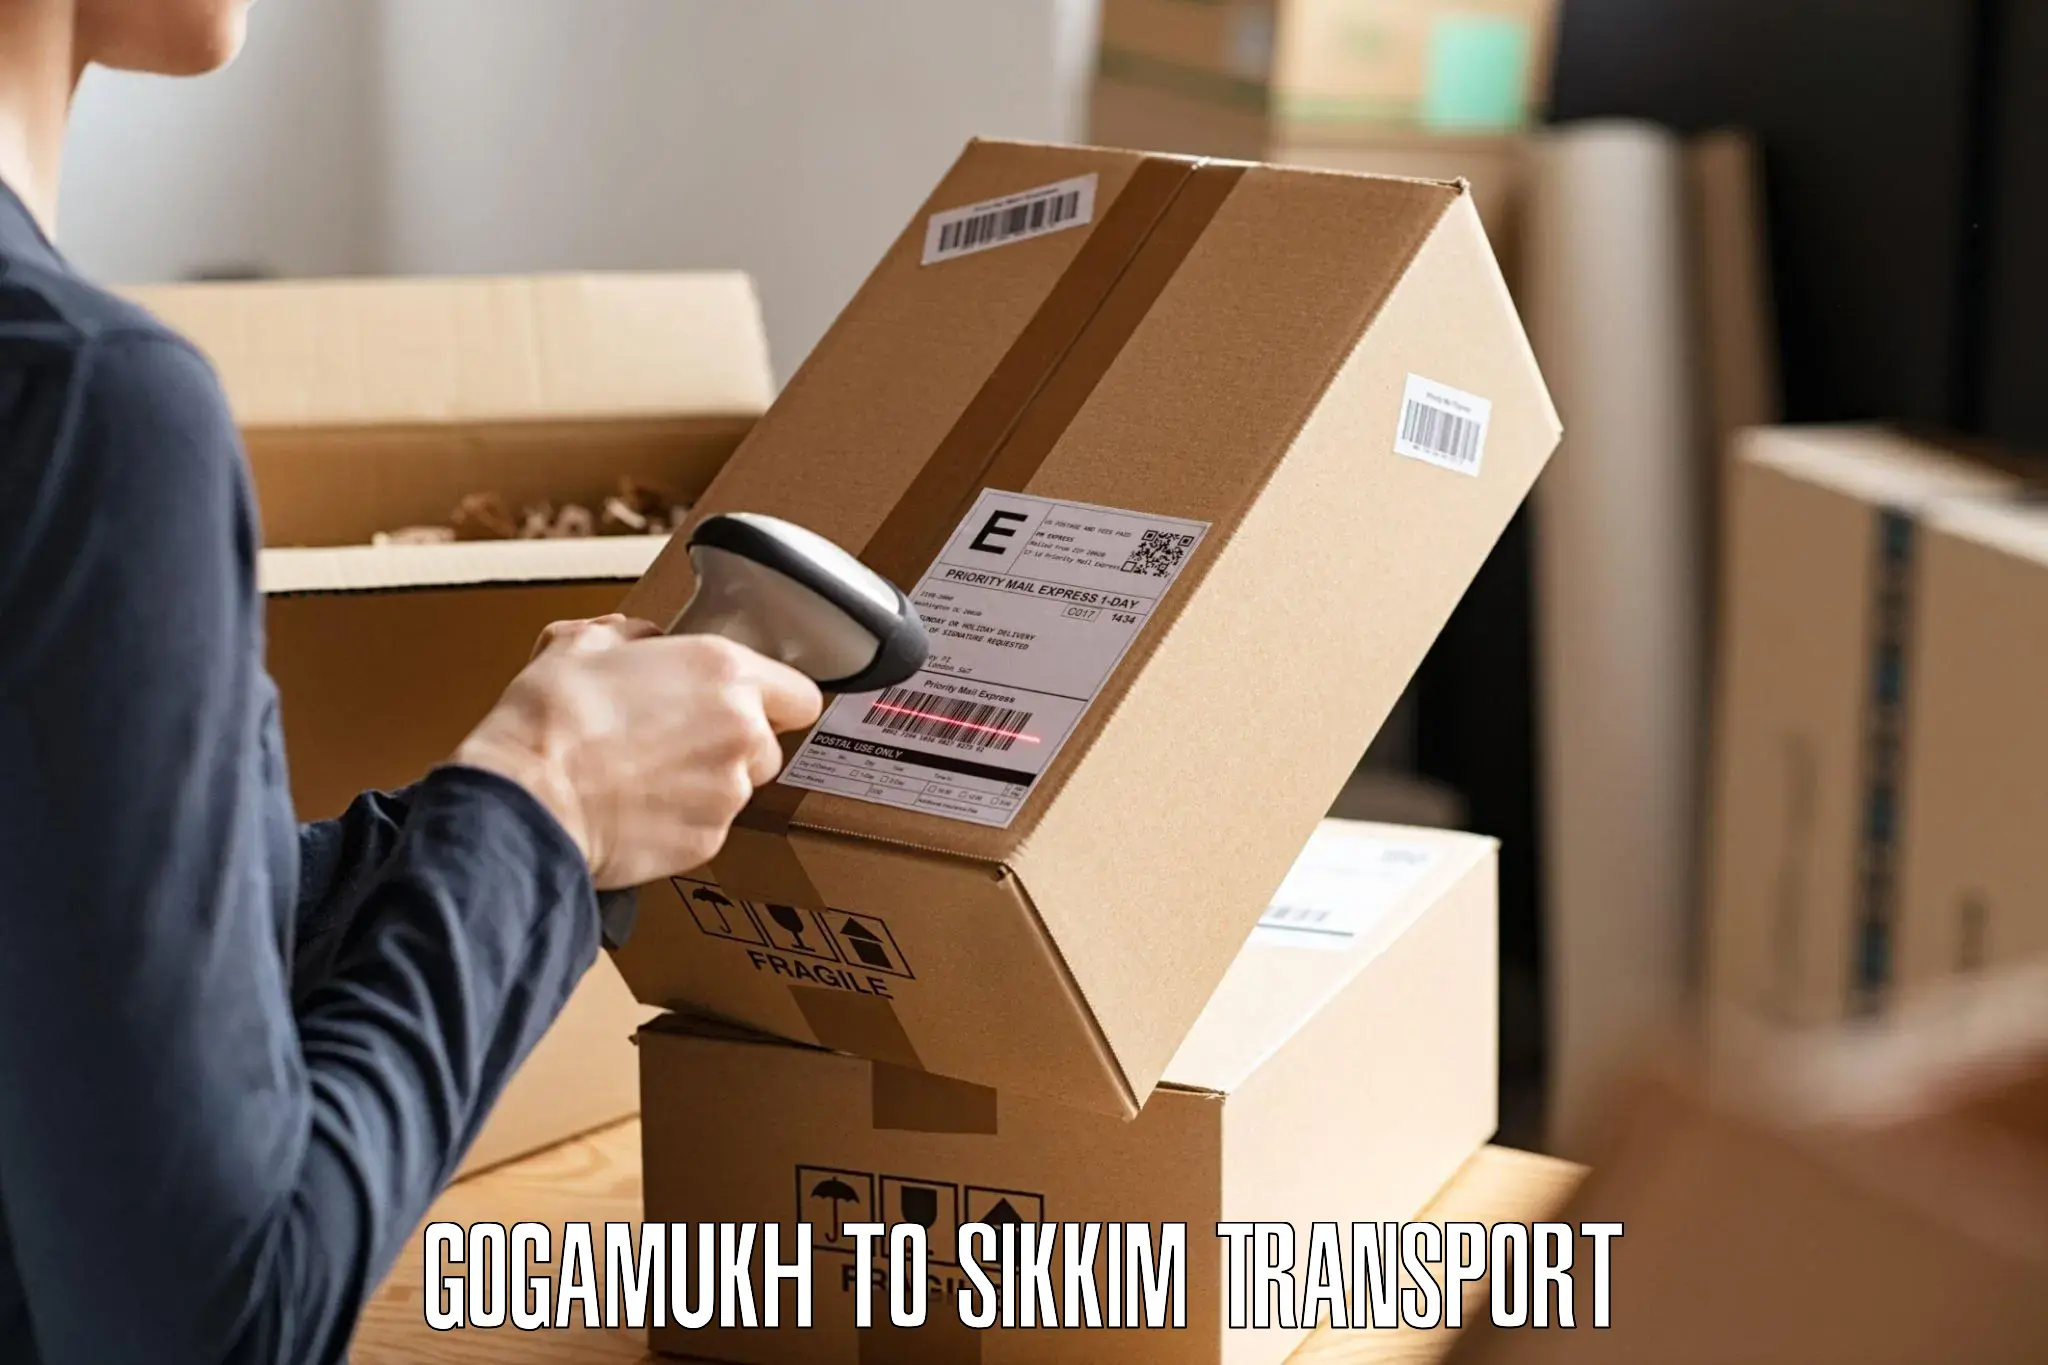 Shipping partner Gogamukh to Geyzing